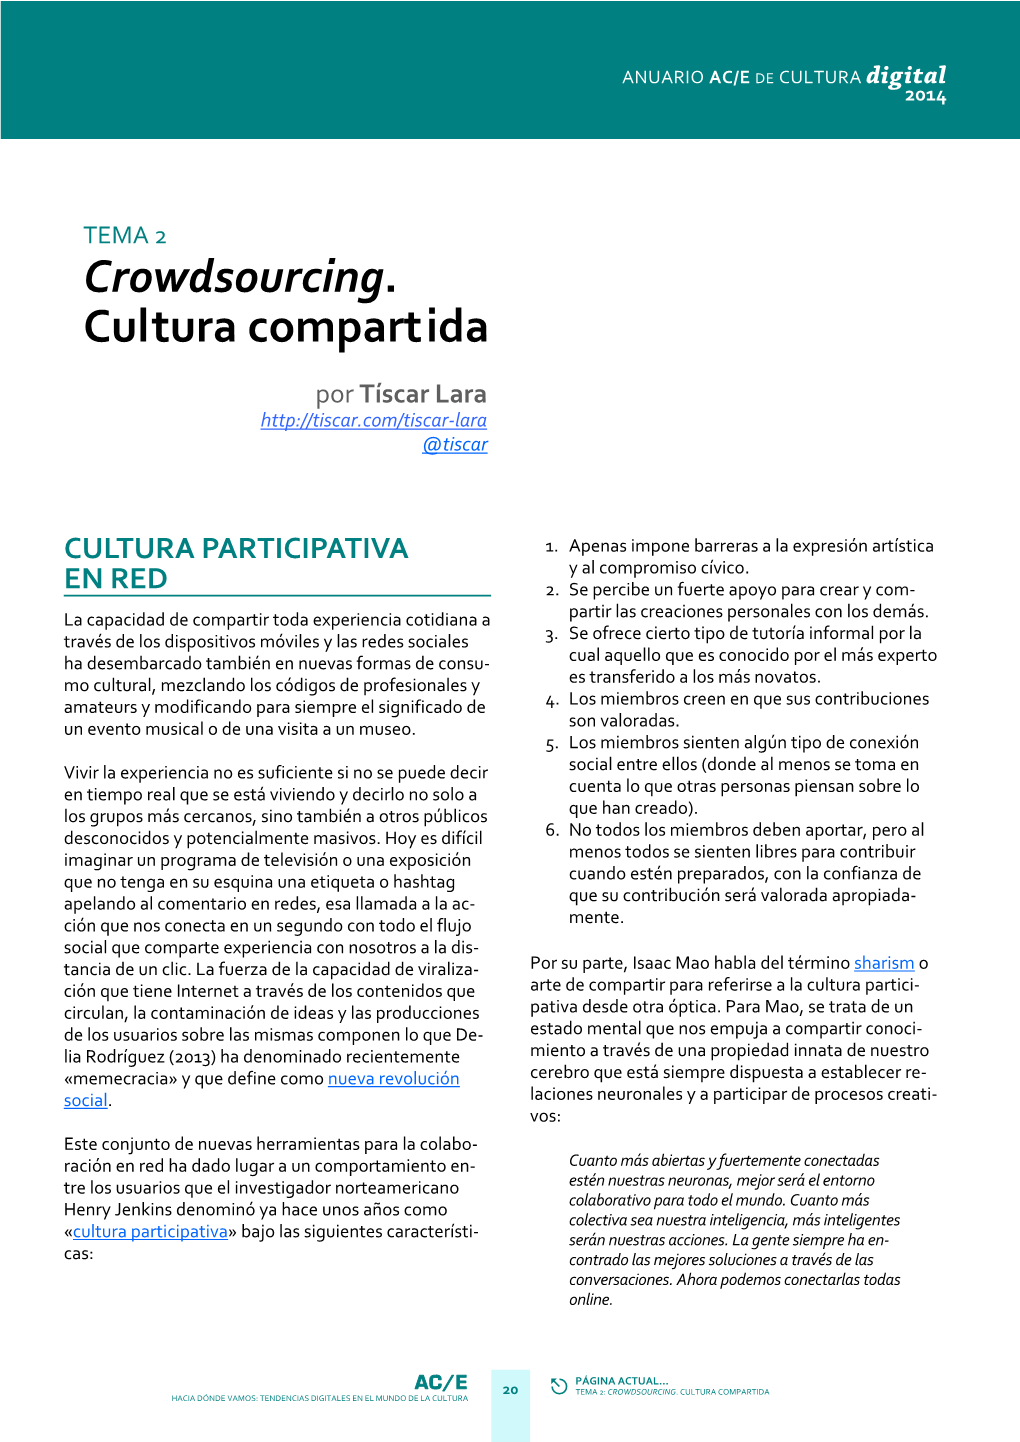 2. Crowdsourcing. Cultura Compartida. Tíscar Lara